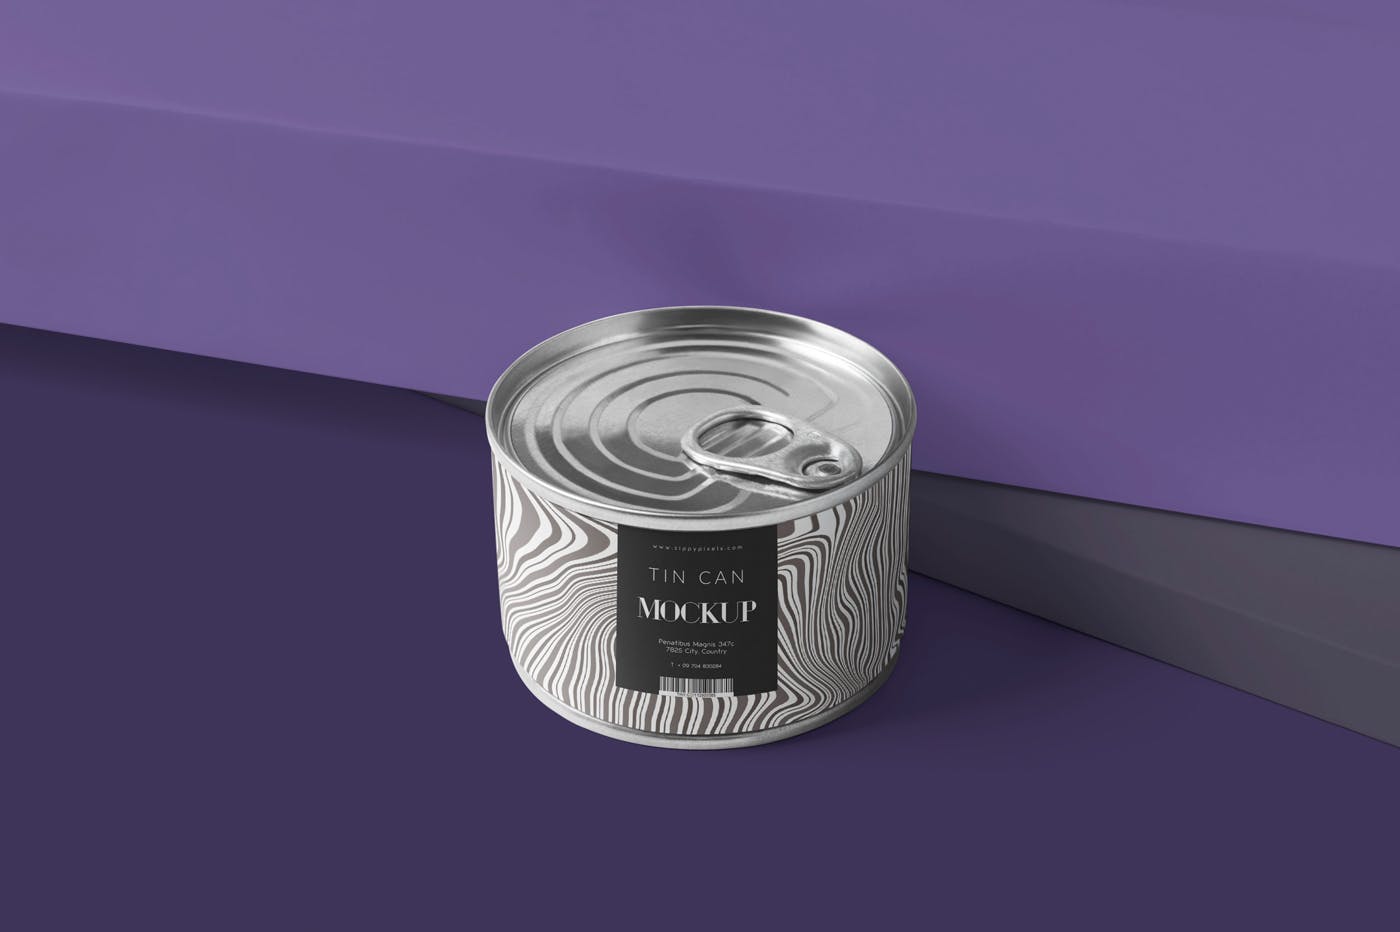 食品罐头外观设计效果图样机PSD模板 Small Food Tin Can Mockups插图(3)